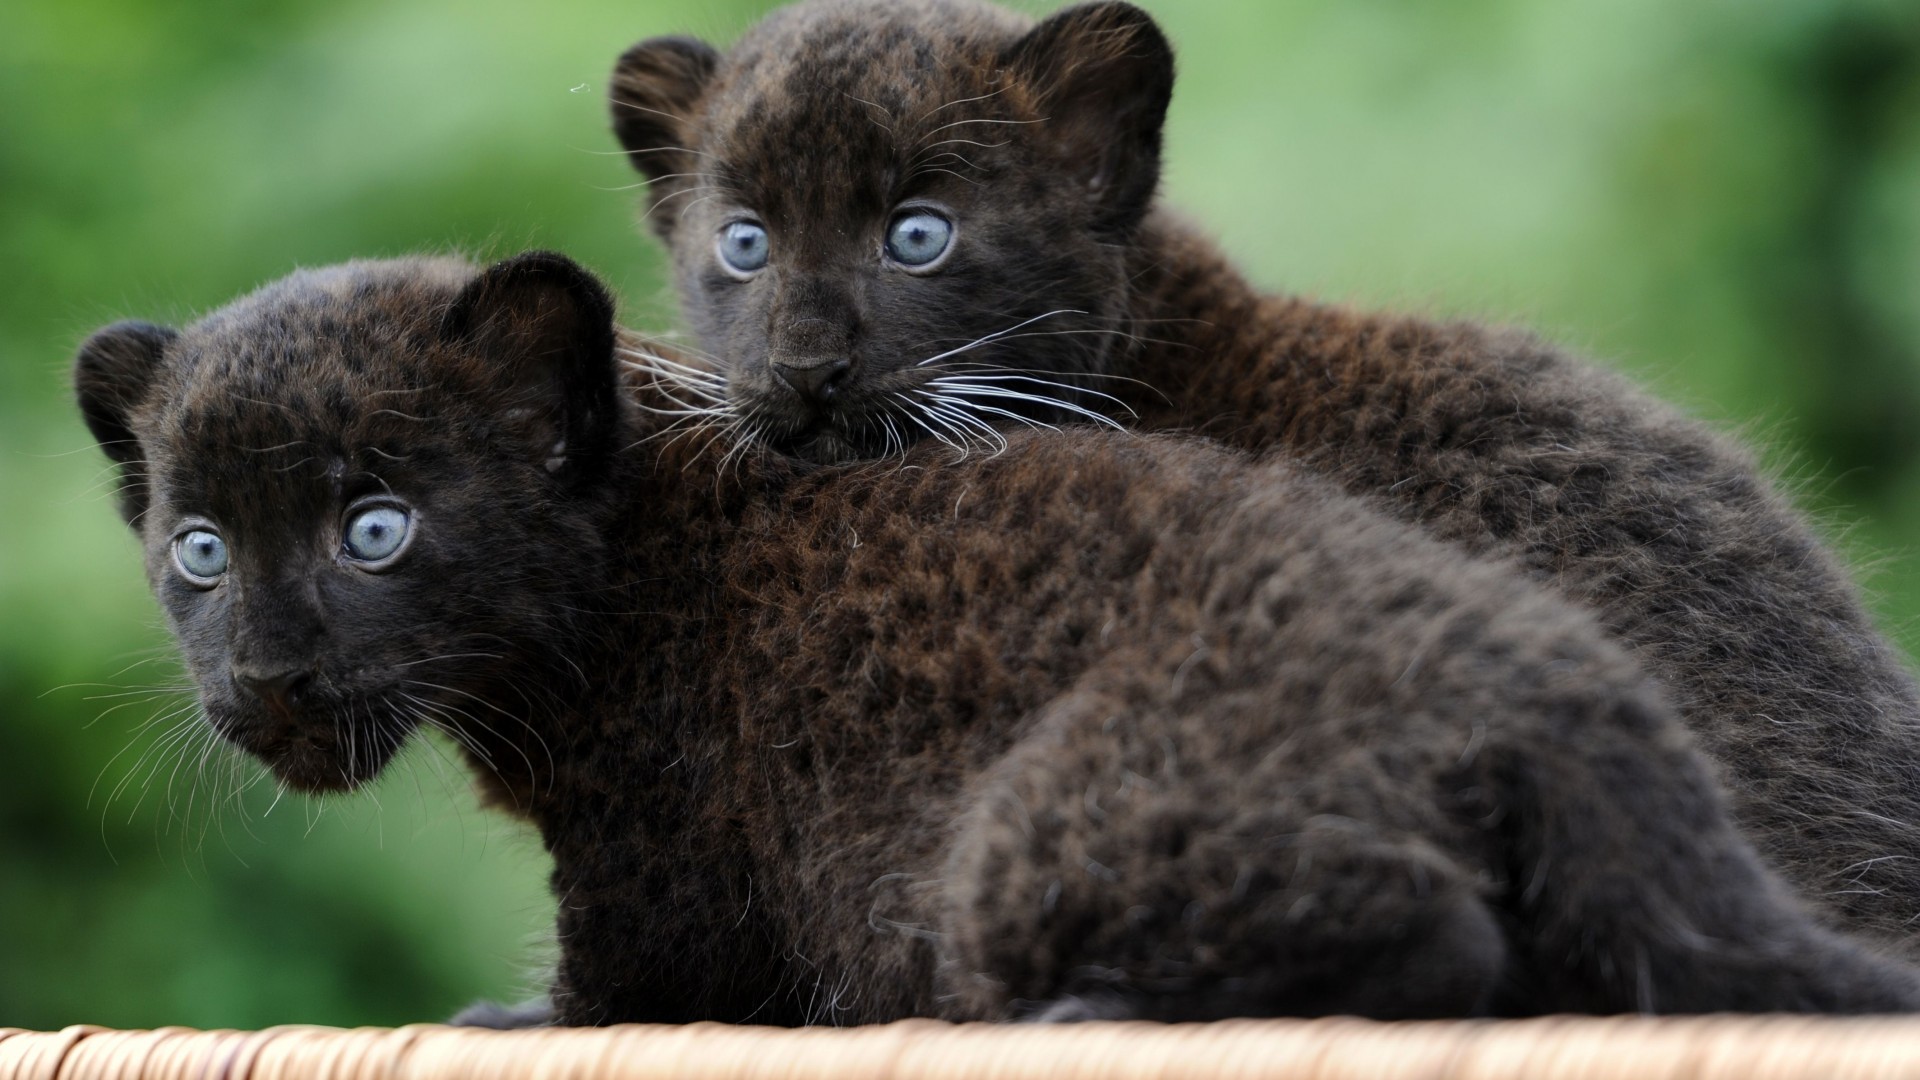 пантера, детеныш, кошки, котята, черная кошка, мех, голубые глаза, природа, Panther, Cub, Cats, Kittens, black cat, fur, blue eyes, nature (horizontal)